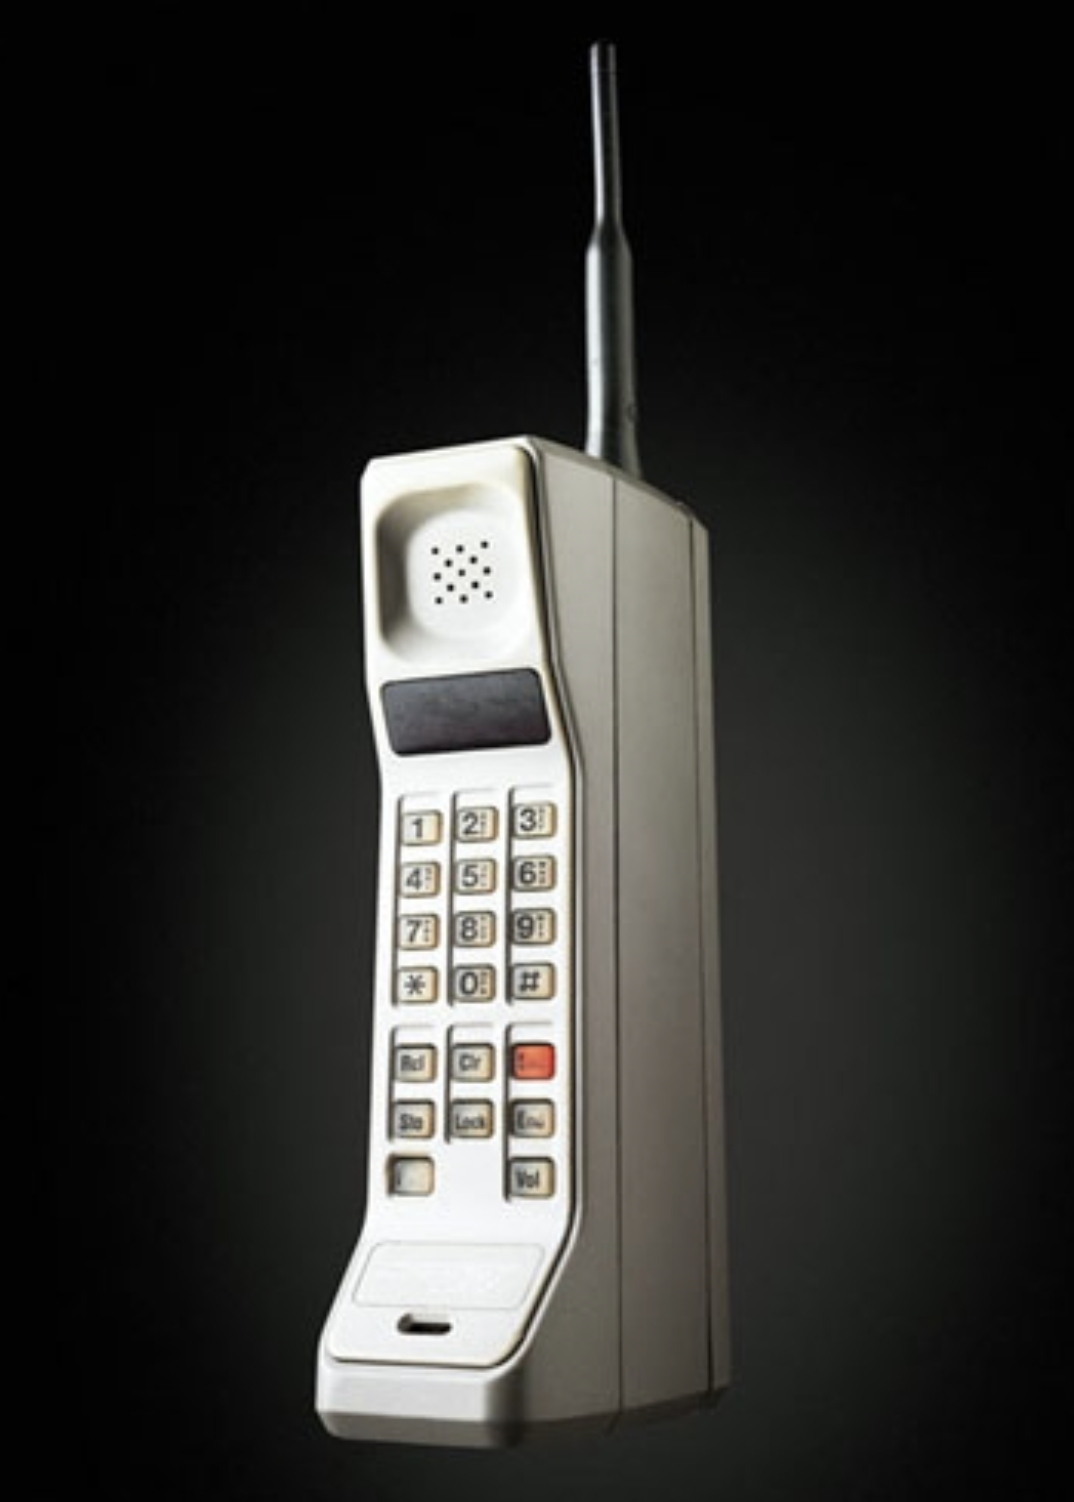 Ая 1 телефон. Моторола DYNATAC 8000x. Телефон Motorola DYNATAC 8000x. Motorola DYNATAC 8000x 1983 год. Первый сотовый телефон Motorola DYNATAC 8000x.